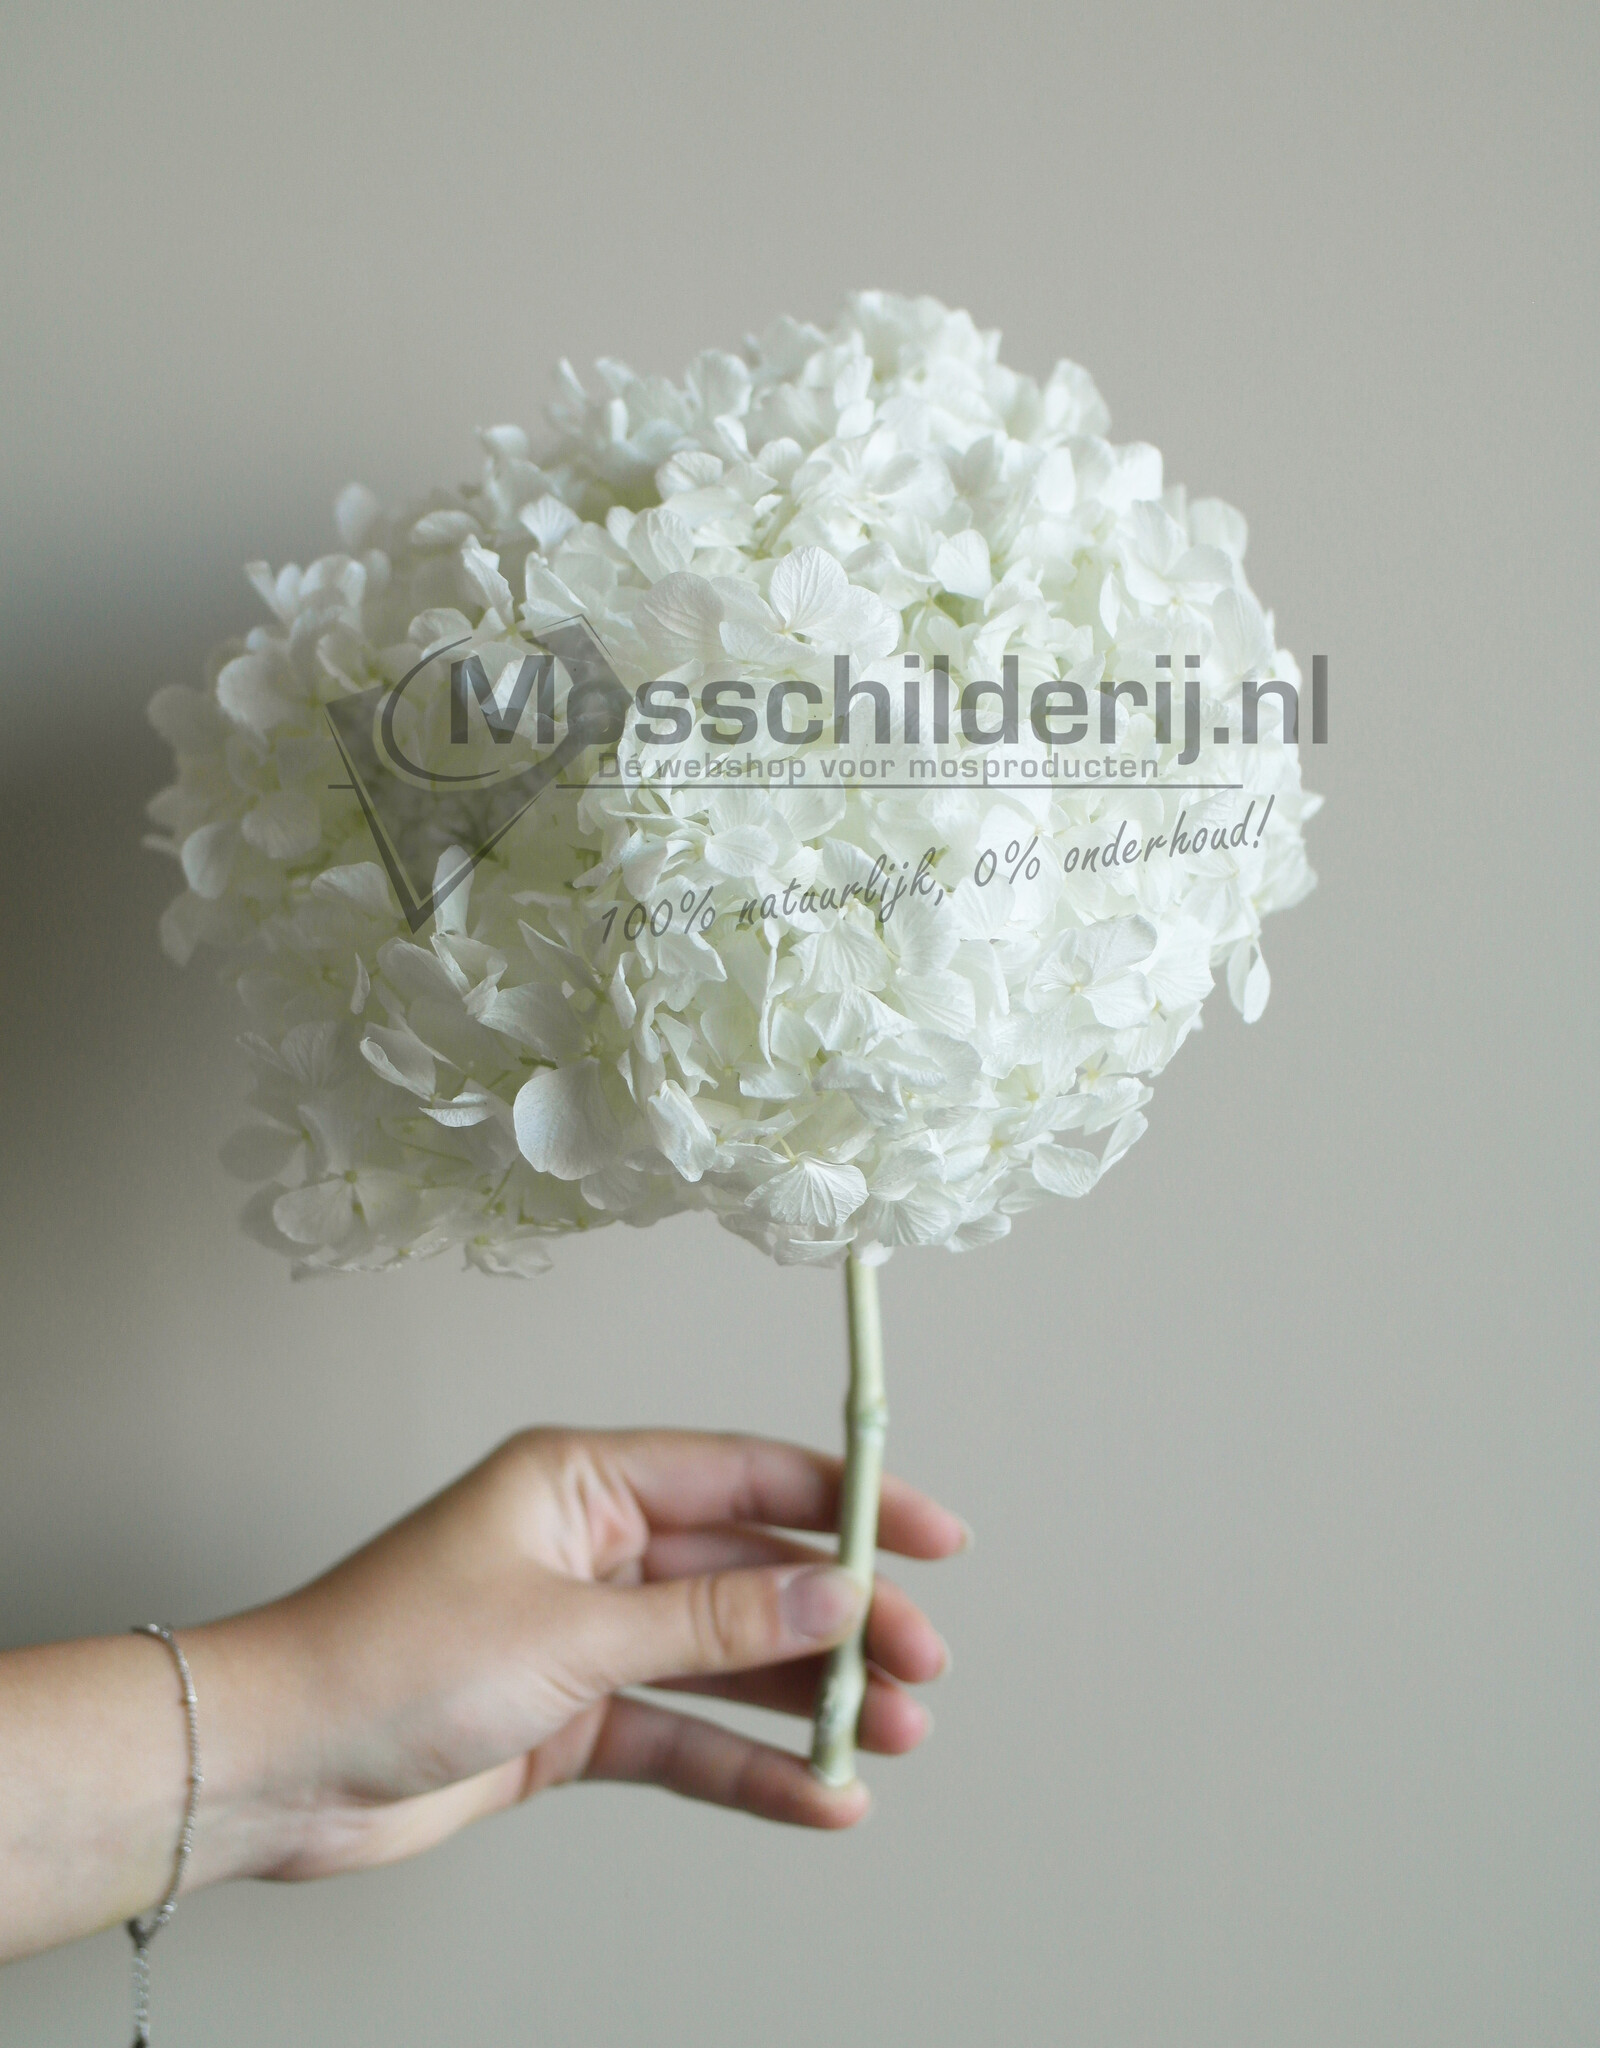 Hydrangea bloem wit geprepareerd